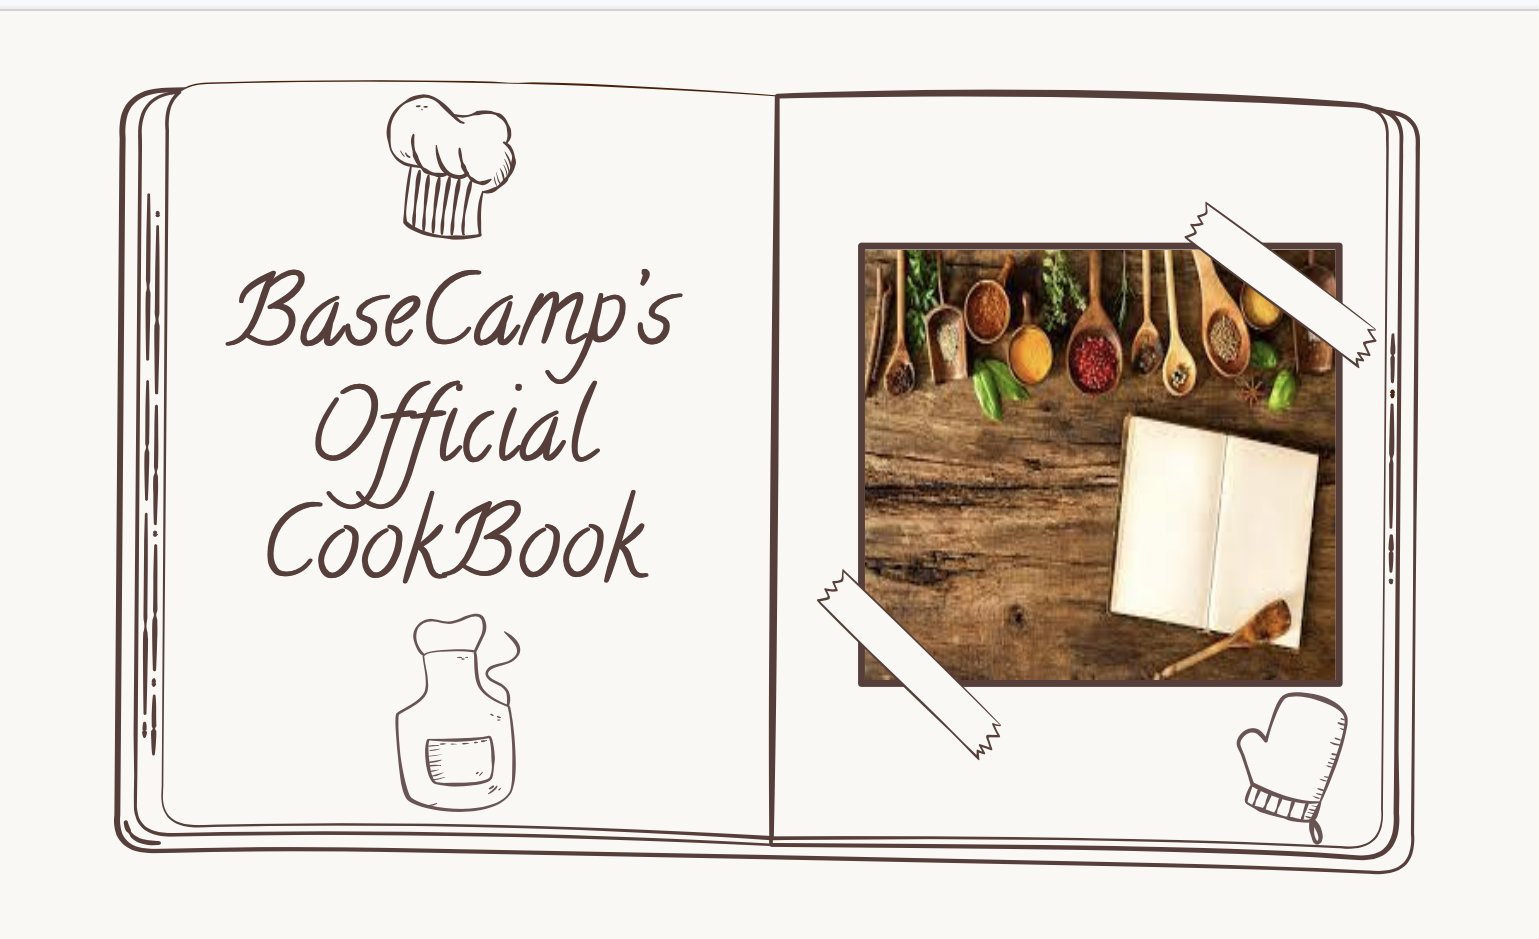 BCCA Official Cookbook